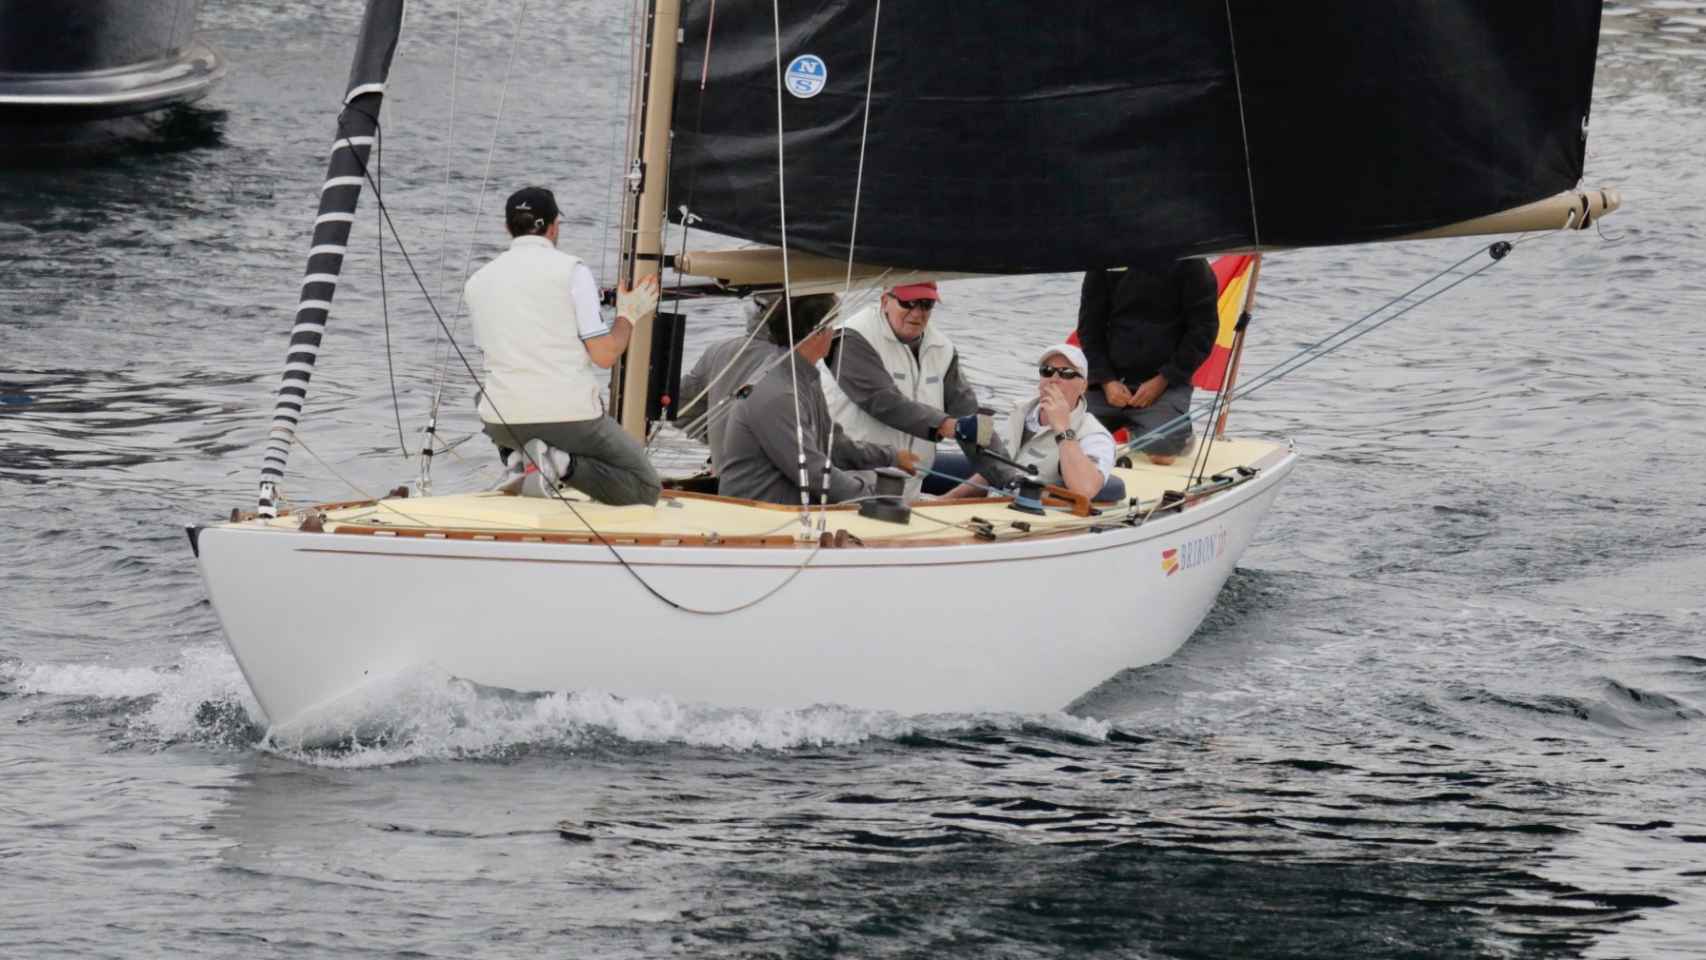 La tripulación del Bribón, con Juan Carlos entre ellos, vuelve al puerto sin haber competido una sola manga del sábado.